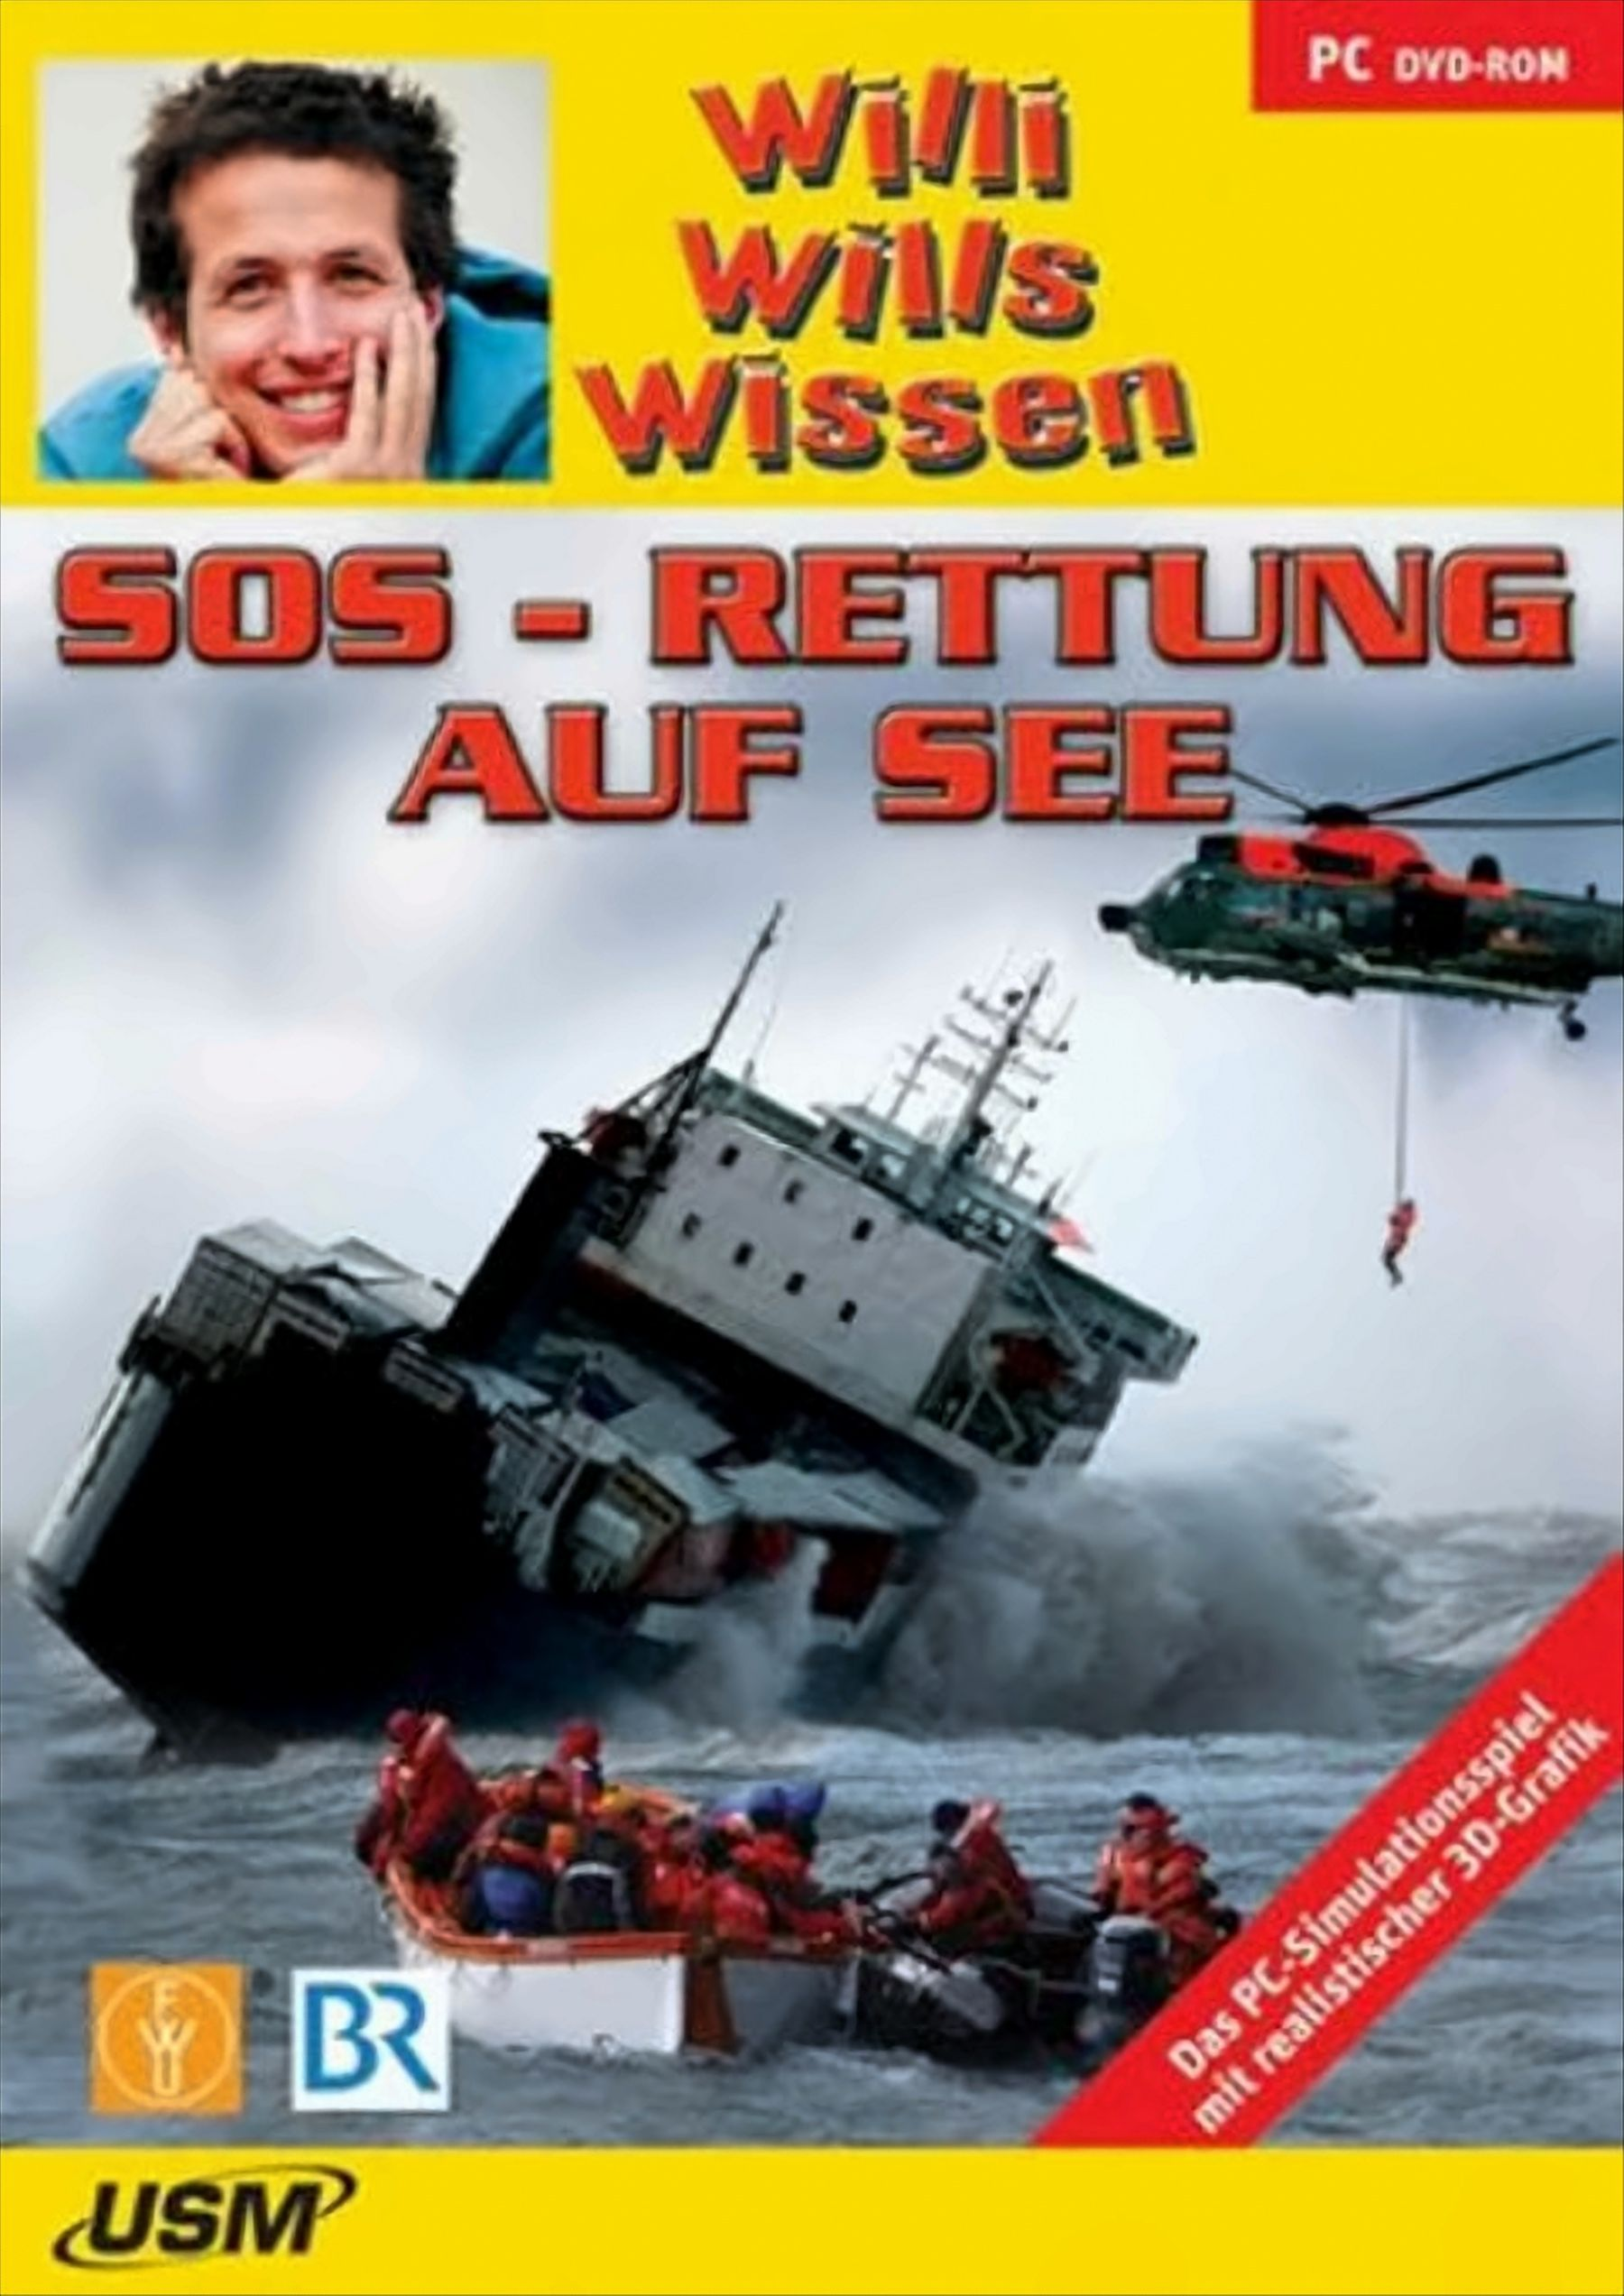 [PC] (DVD-ROM) Willi Rettung wills auf - - See SOS wissen: